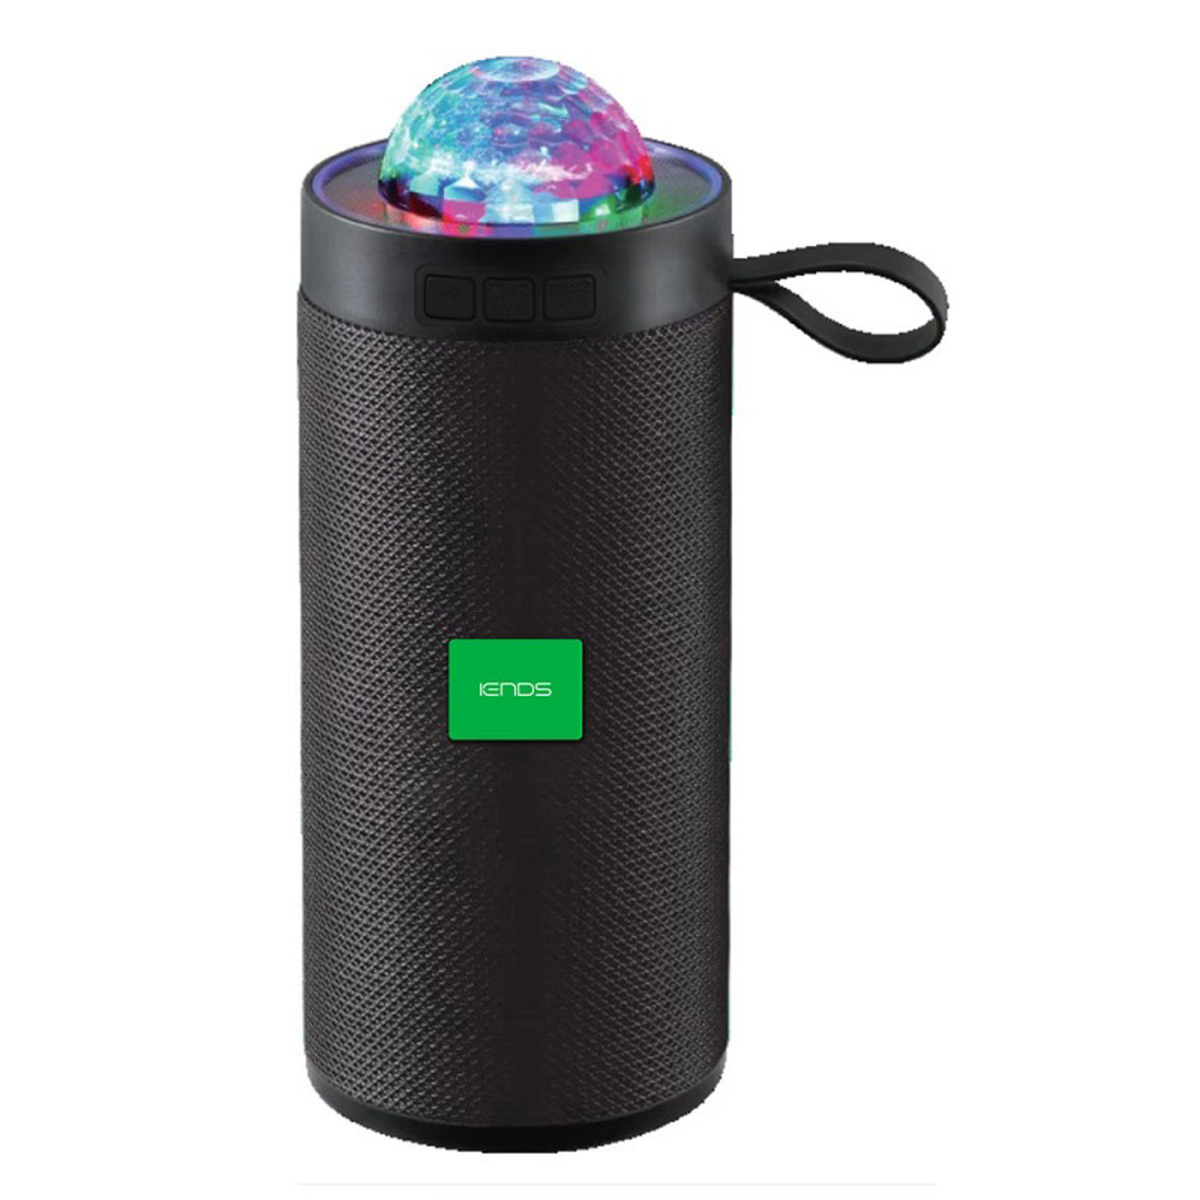 Iends Wireless Speaker, Multicolor, IE-SP999